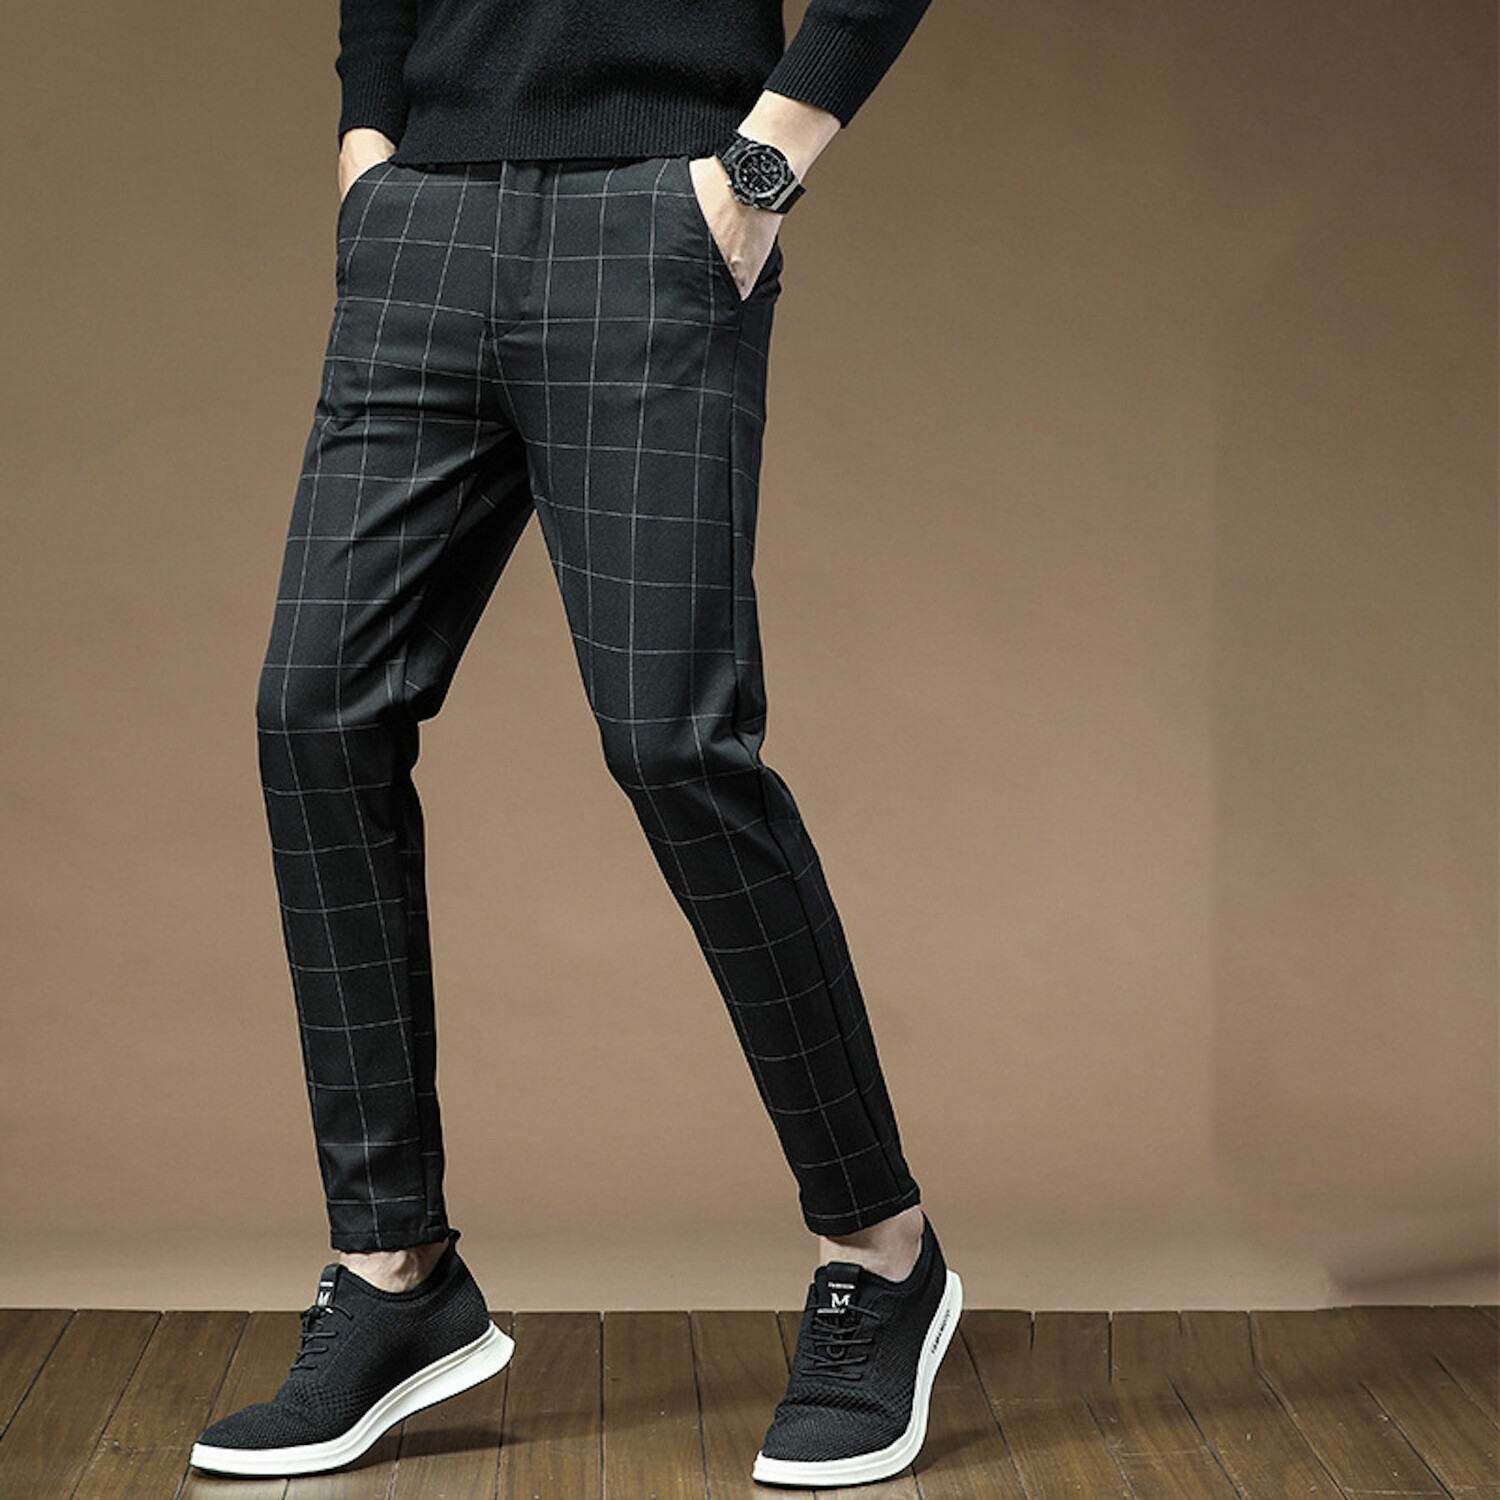 Wide Grid Print Slim Fit Pants // Black (30) - Amedeo Exclusive Slim ...